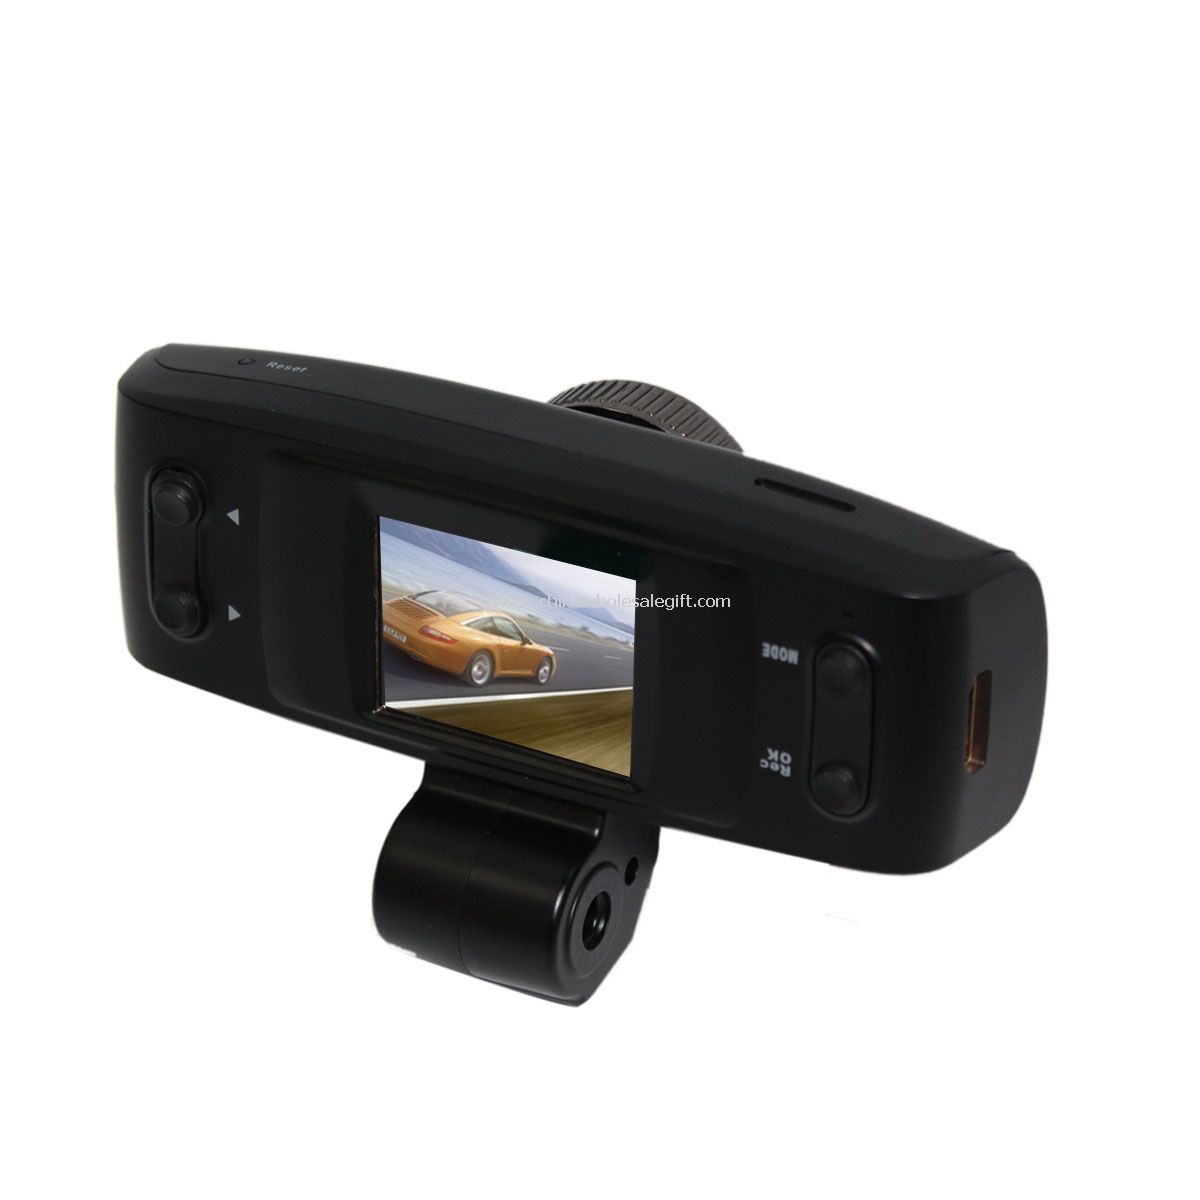 Definisi tinggi 1080p video camcorder GPS dengan layar